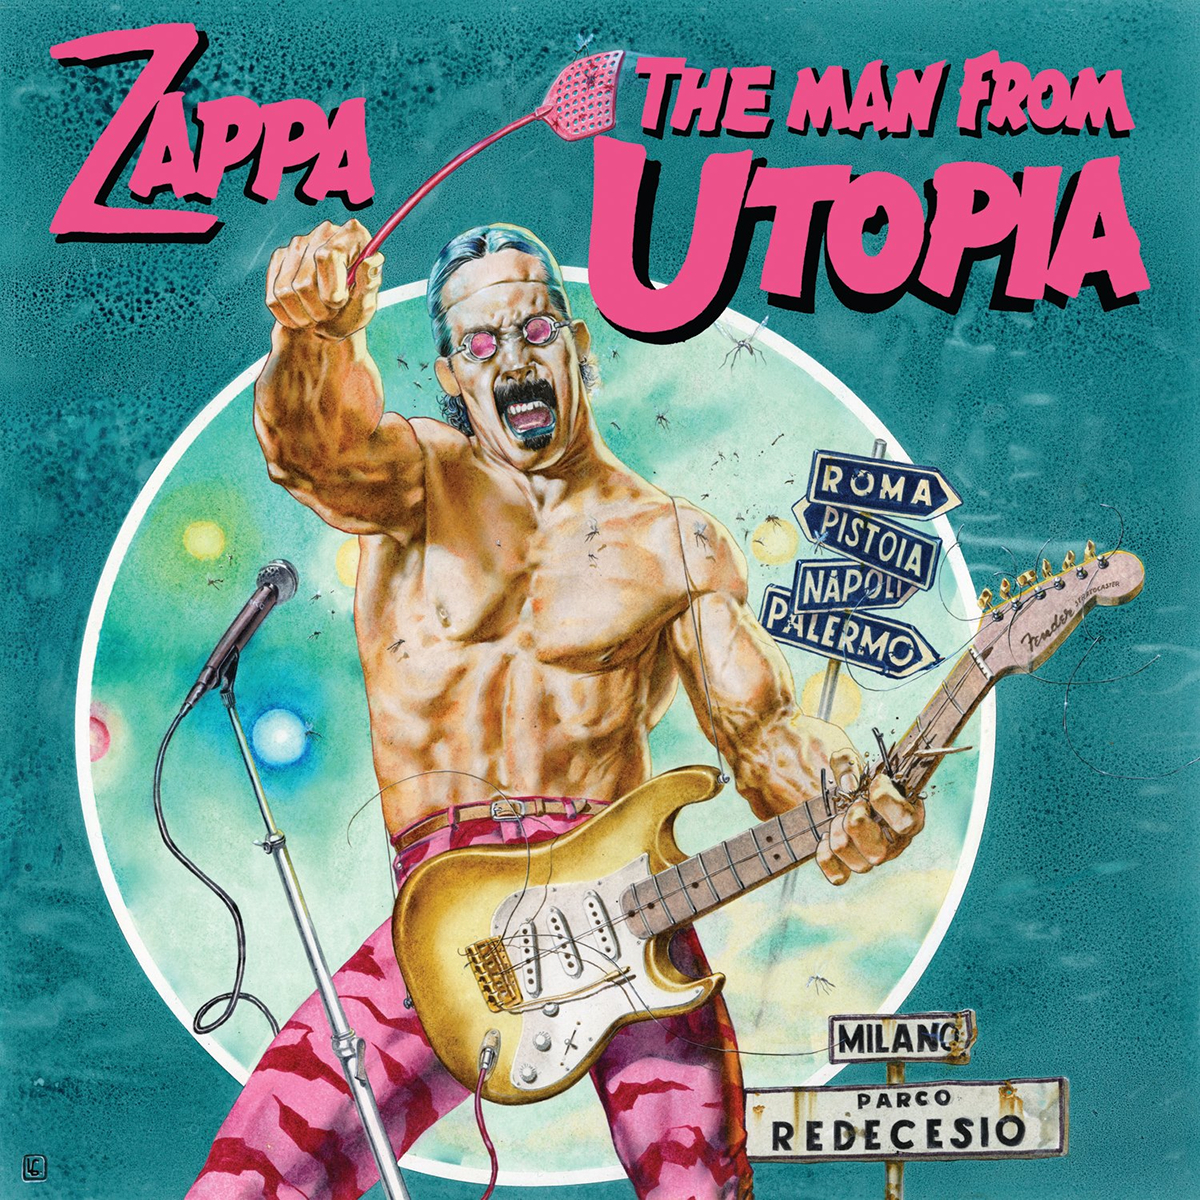 Frank Zappa Salvo Cuccia